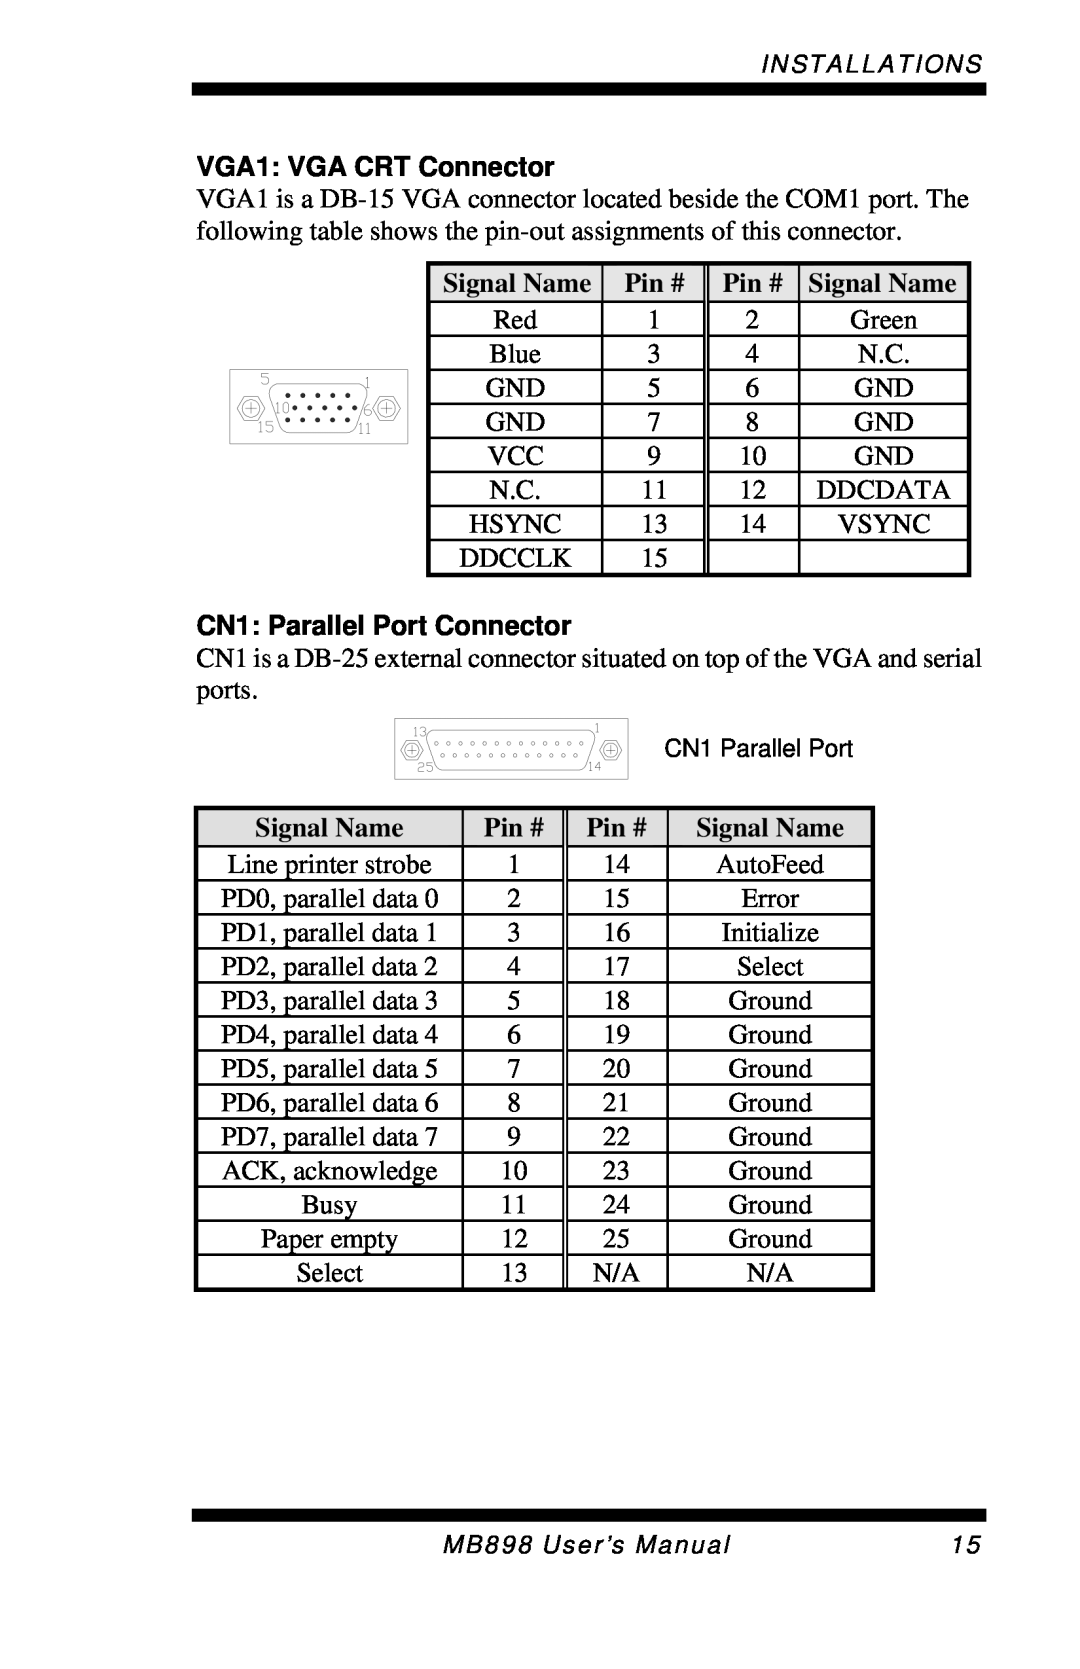 Intel MB898RF, MB898F user manual VGA1: VGA CRT Connector, CN1: Parallel Port Connector 